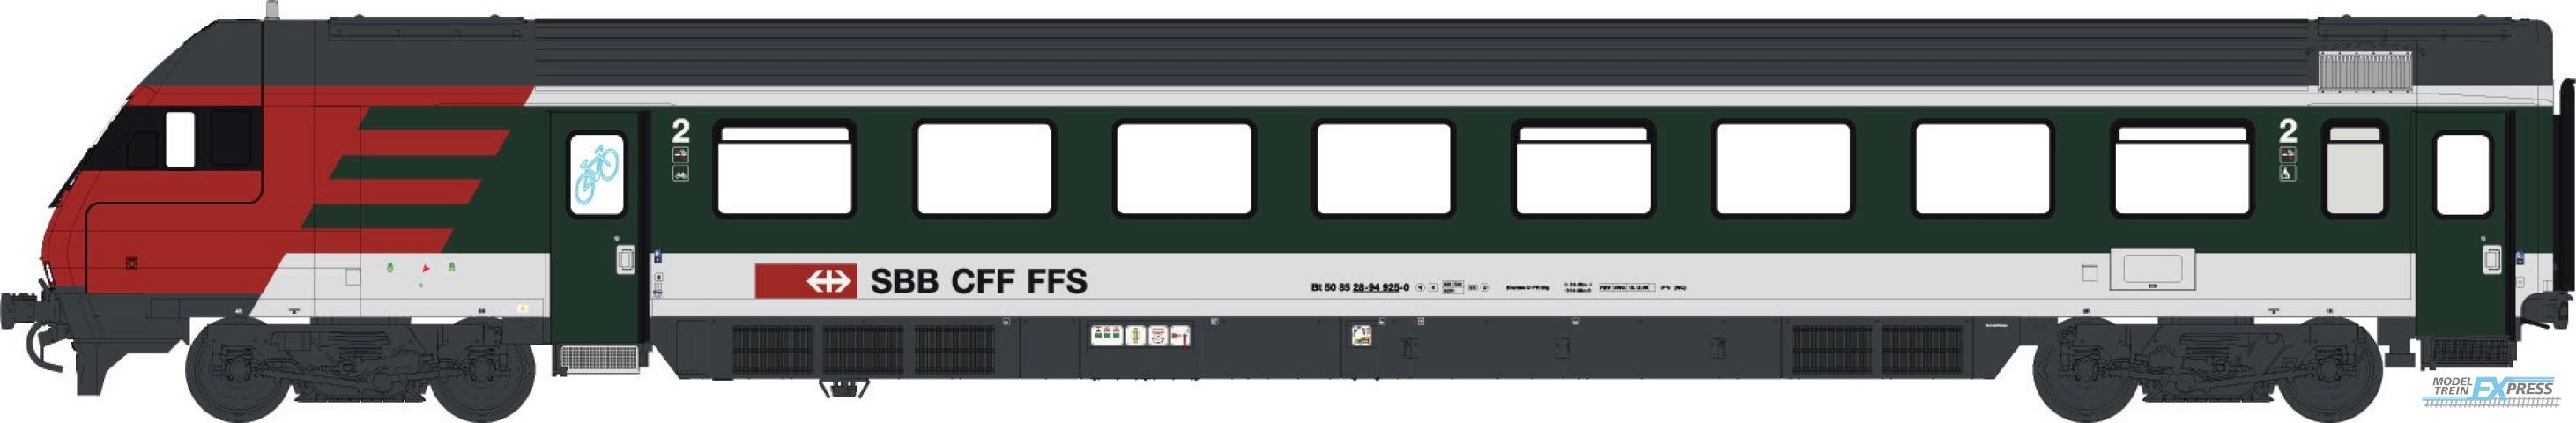 LS Models 472200DC InterCity-stuurstandwagen 2e klasse, groen/lichtgrijs met rood front  /  Ep. V  /  SBB  /  HO  /  DC  /  1 P.